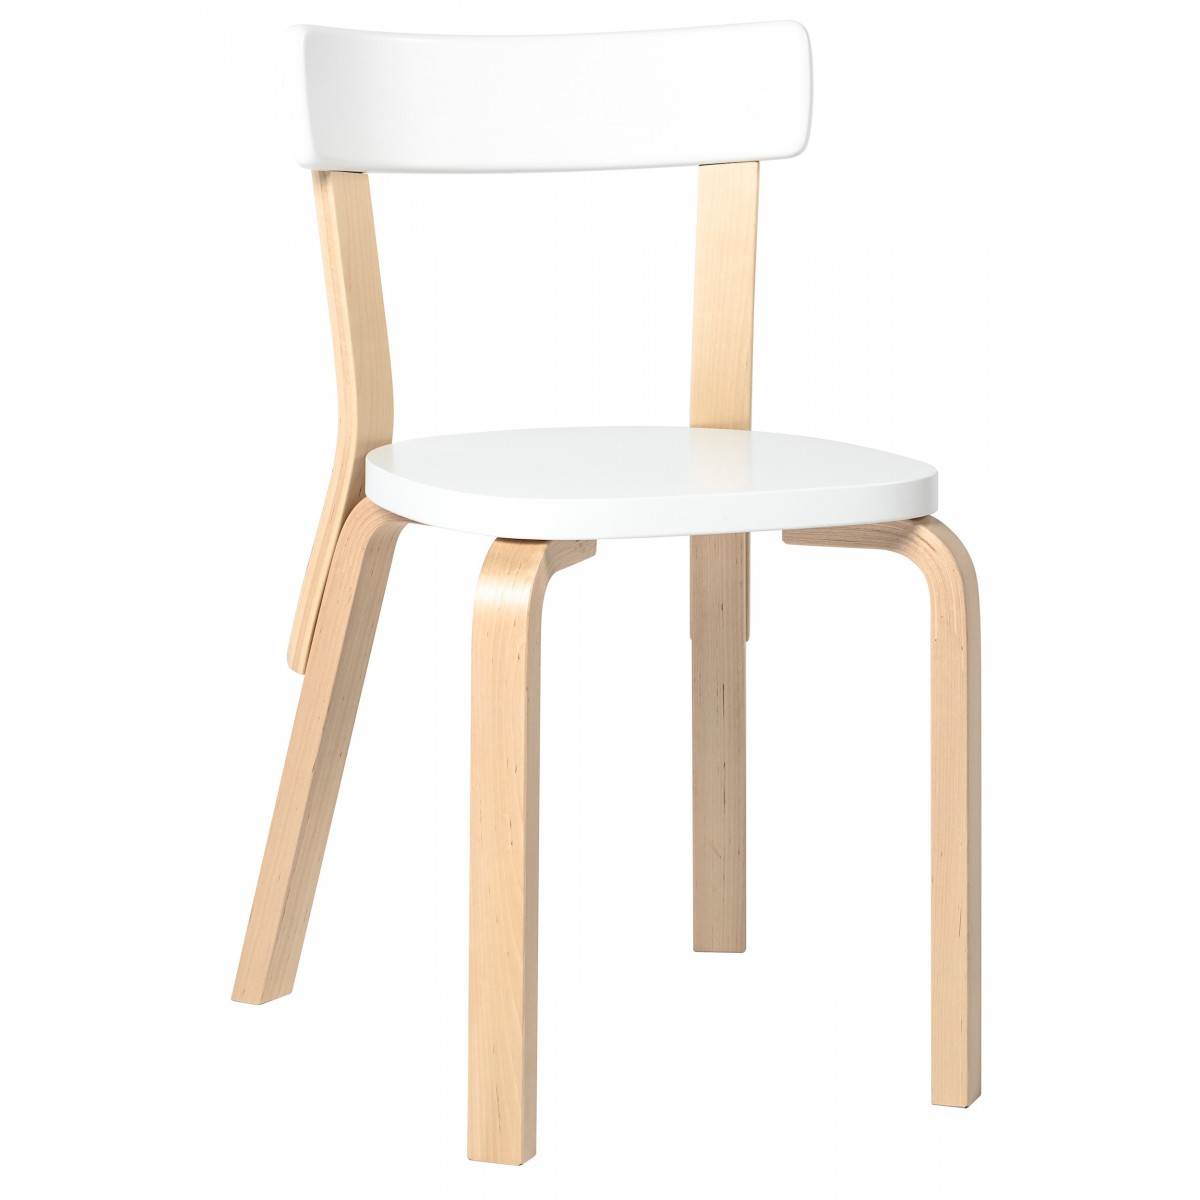 white + birch - 69 chair